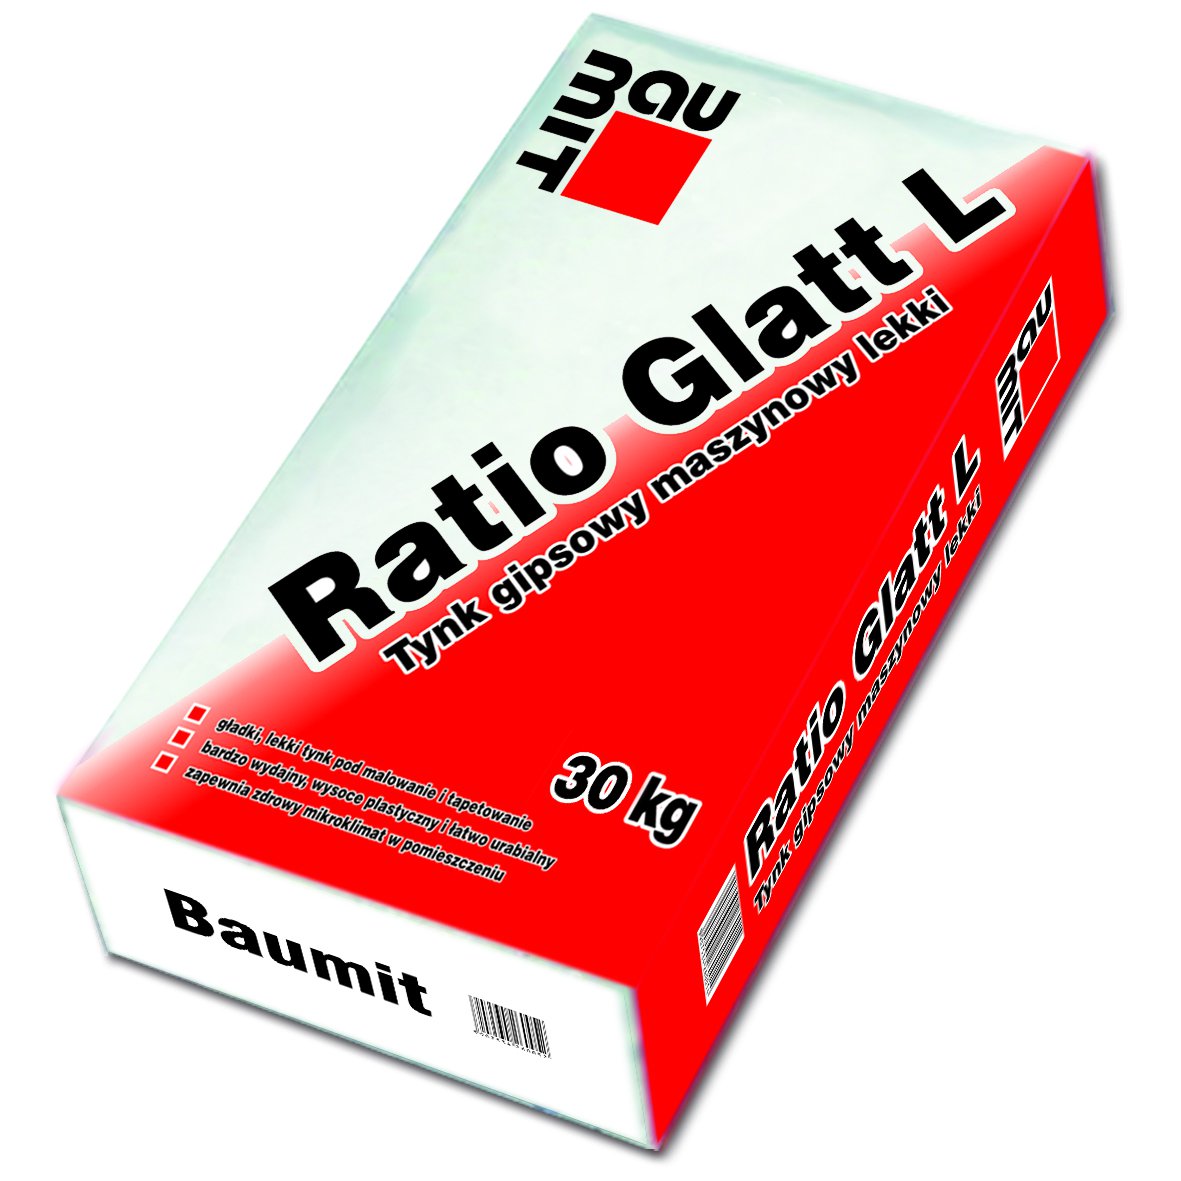 Tynk gipsowy Baumit Ratio Glatt L – 30 kg Tynk Baumit